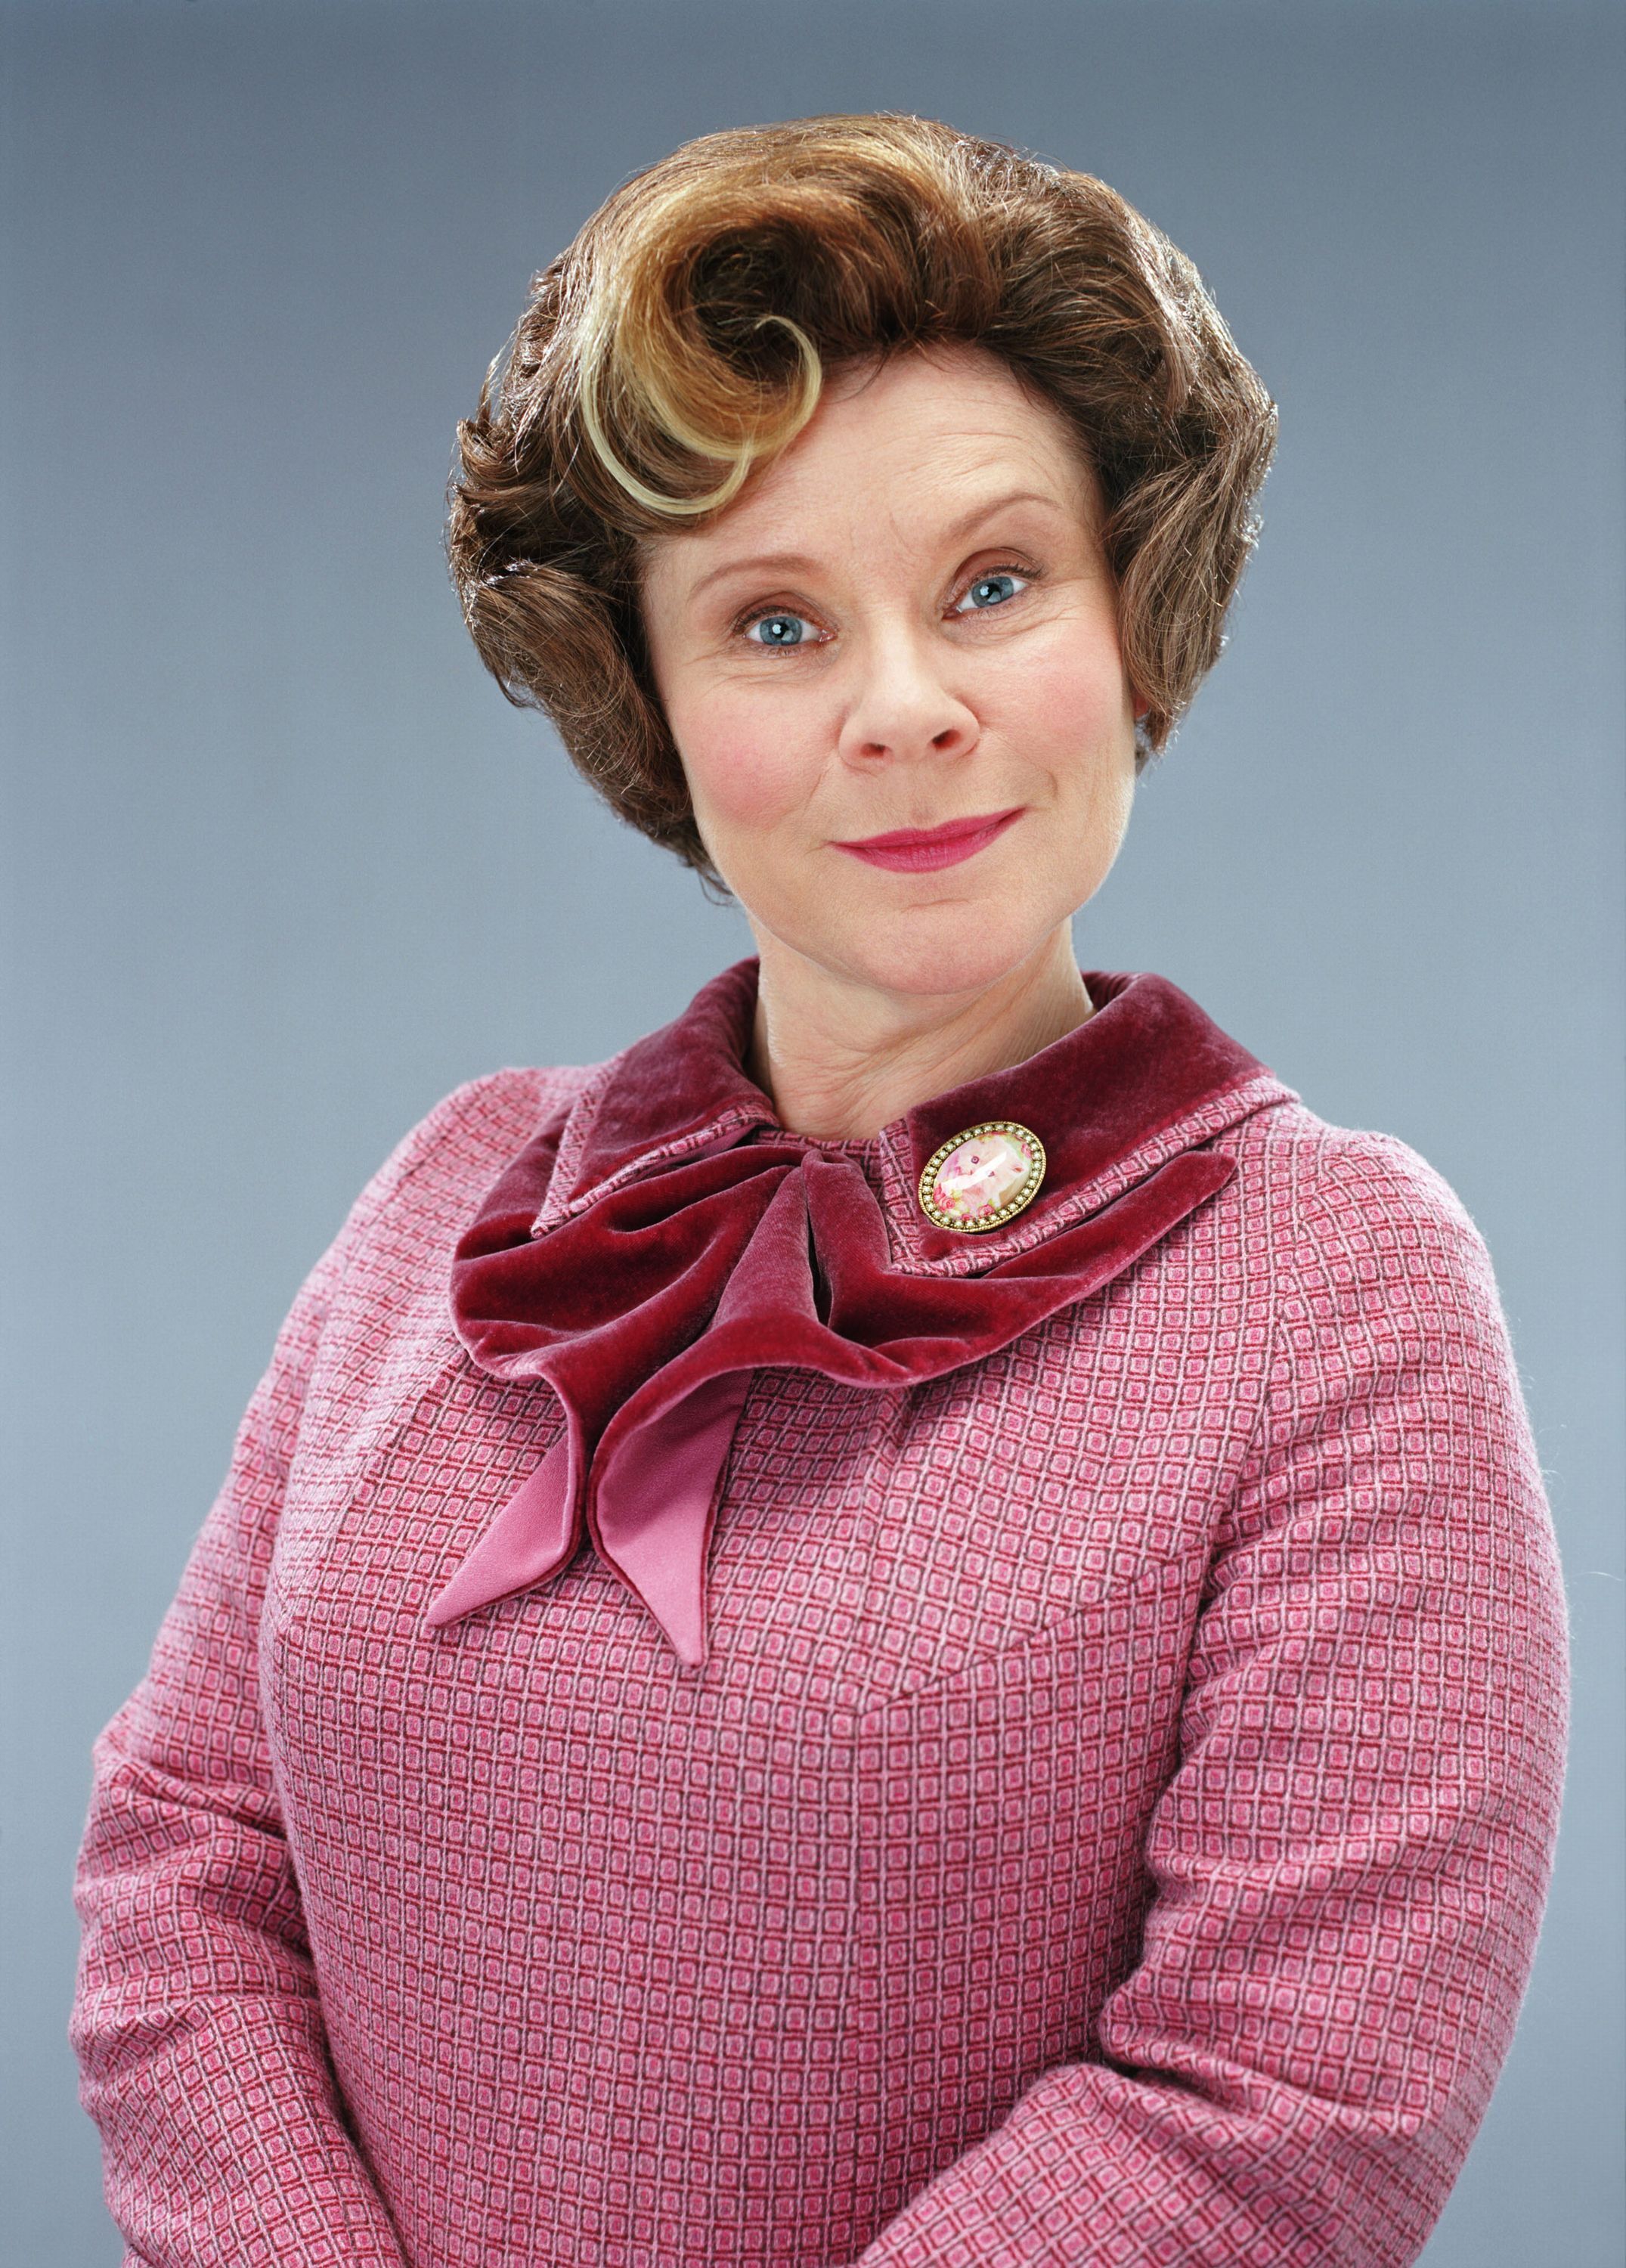 professor umbridge actress